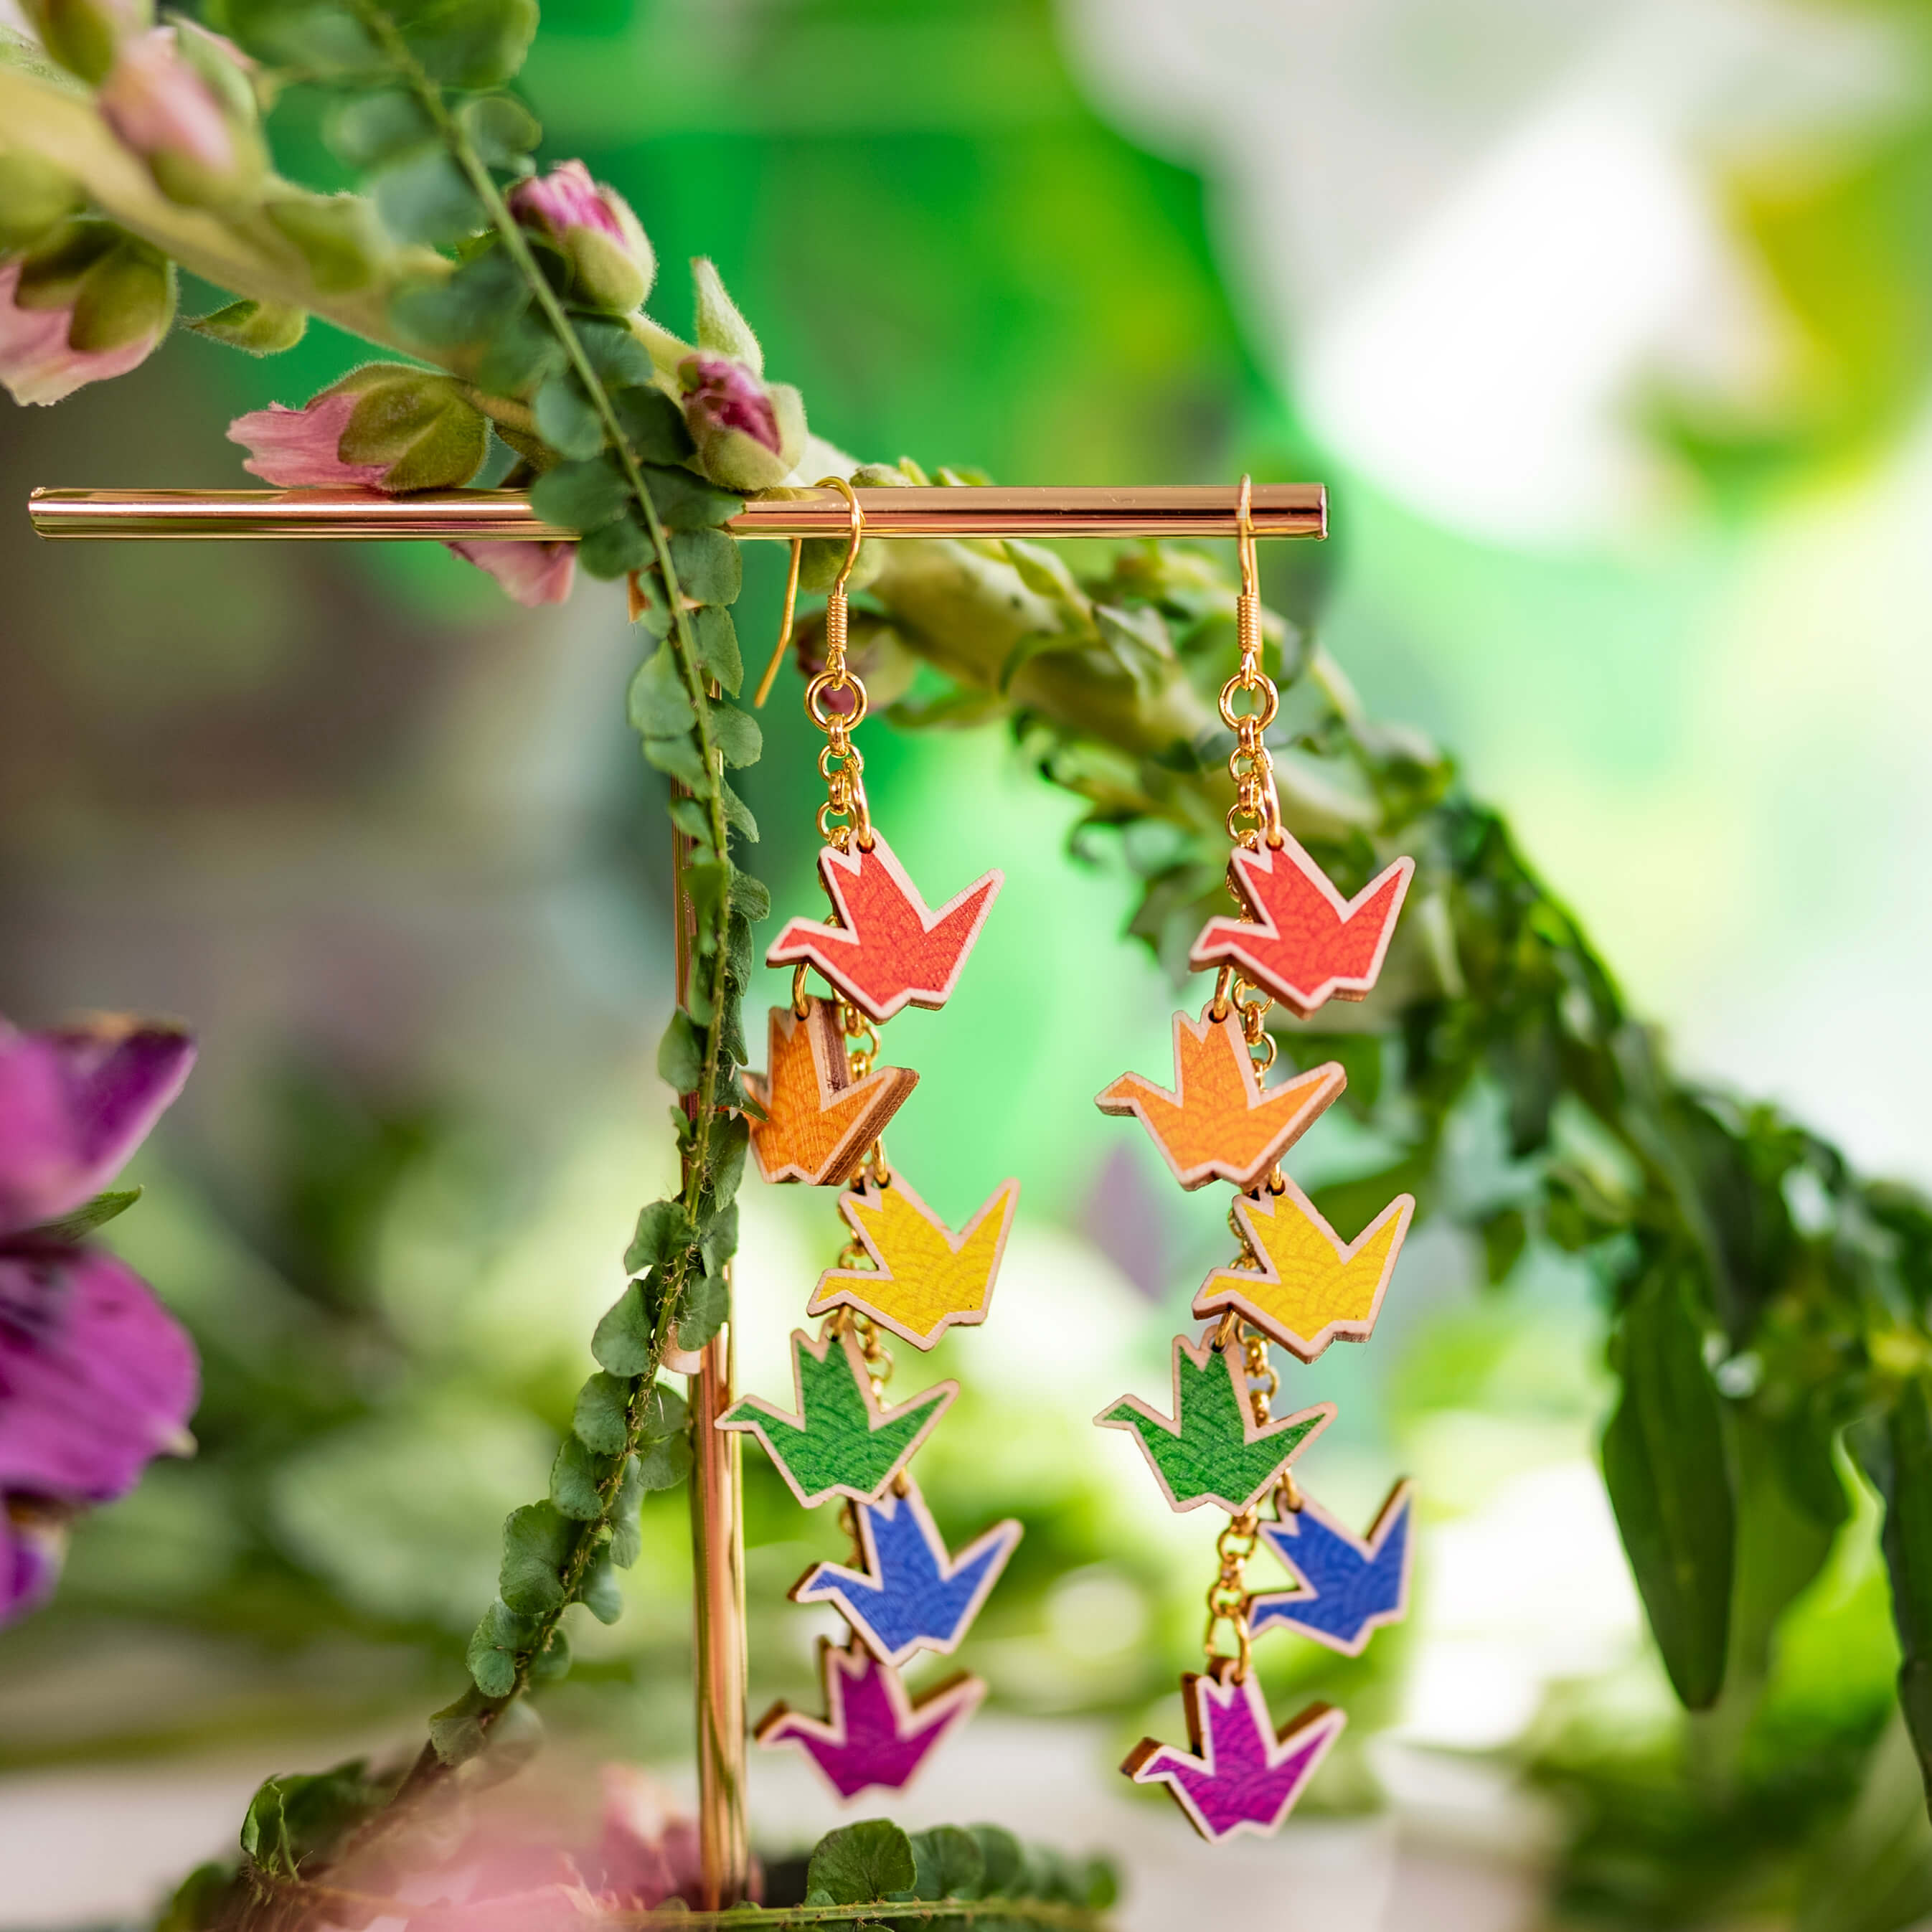 Nämä värikkäät origamilinnut edustavat Rakkautta ja Rauhaa. Rakkaus ja oikeus rauhaan kuuluu kaikille. Tämän korun tuotosta hyvitetään 25% Helsinki Pridelle. Haluamme tällä pienellä teolla tukea sellaista maailmaa, jossa jokainen saa rakastaa vapaasti ja pelkäämättä. Rakkauden puolesta korvakoru on käsintehty Suomessa.